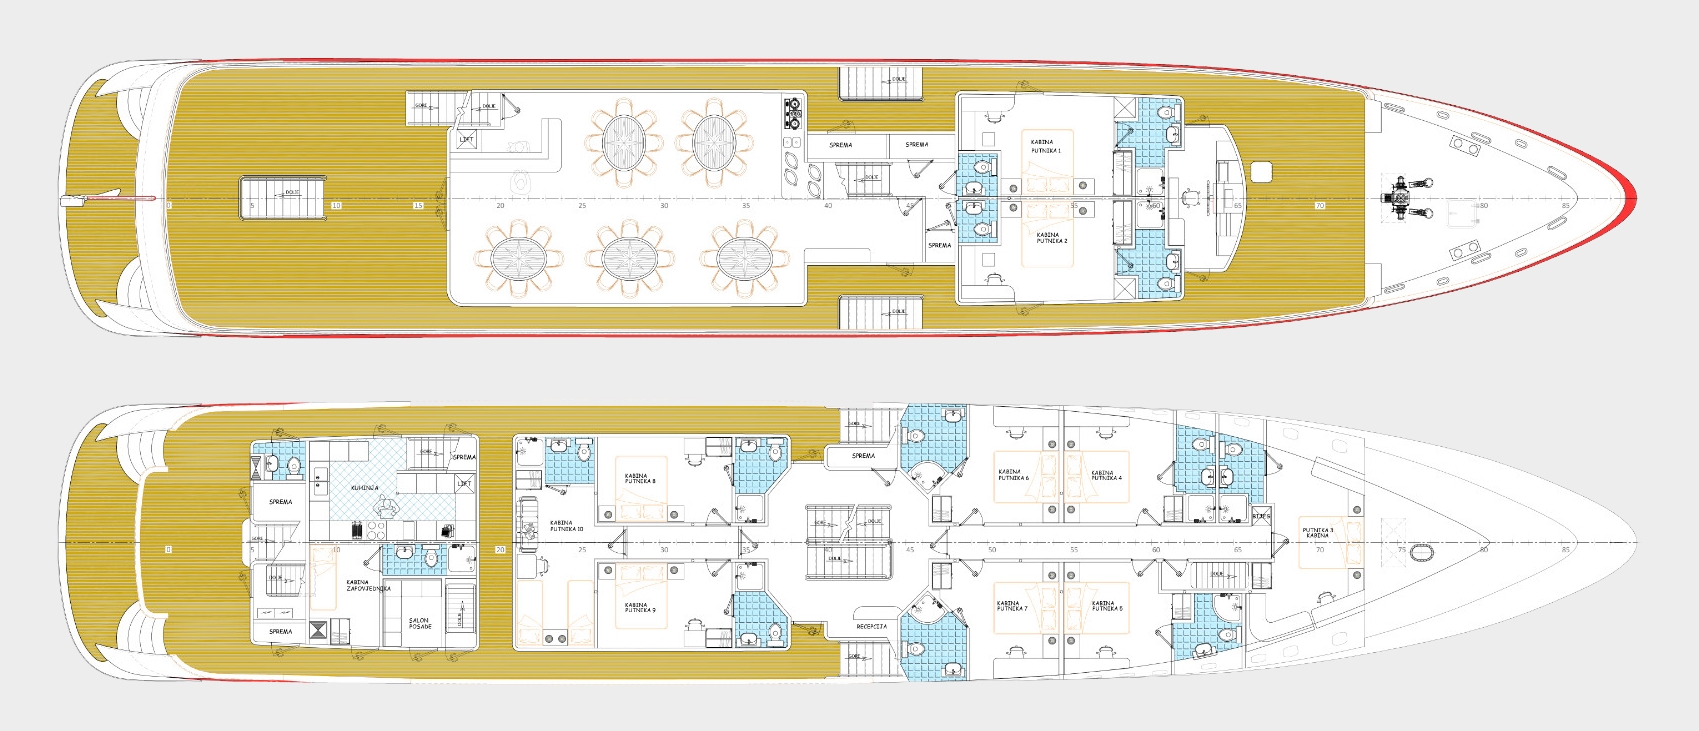 riva yacht charter layout